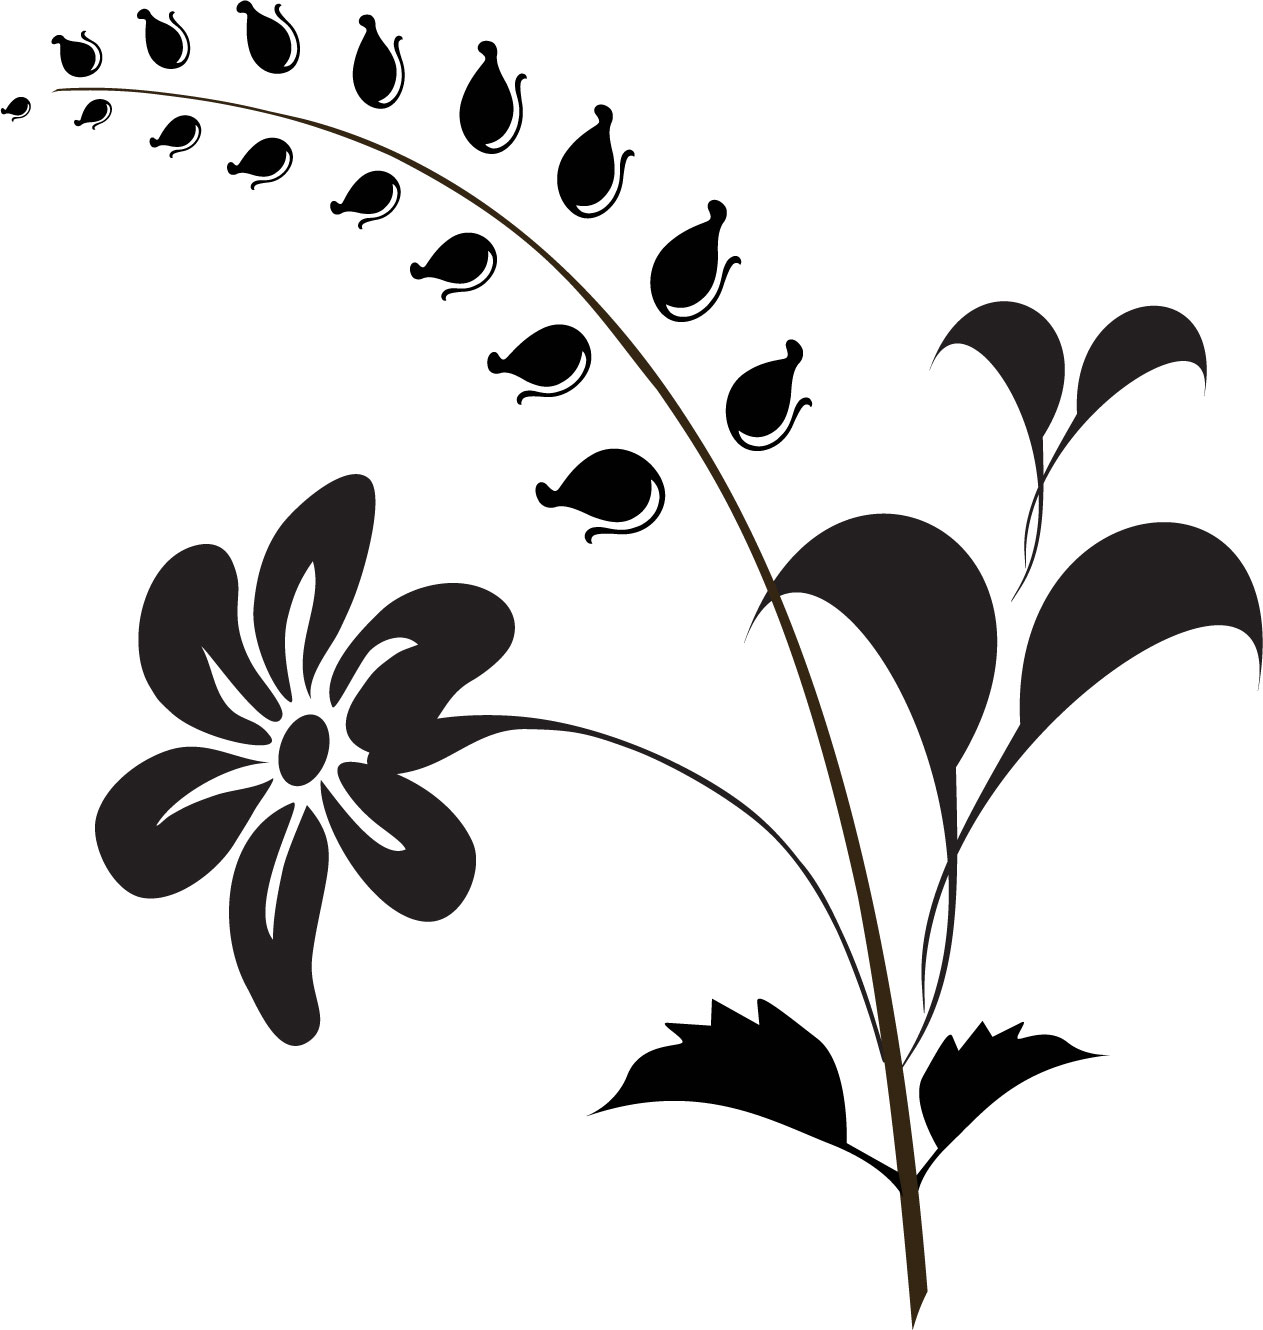 花のイラスト フリー素材 白黒 モノクロno 452 白黒 鈴 葉